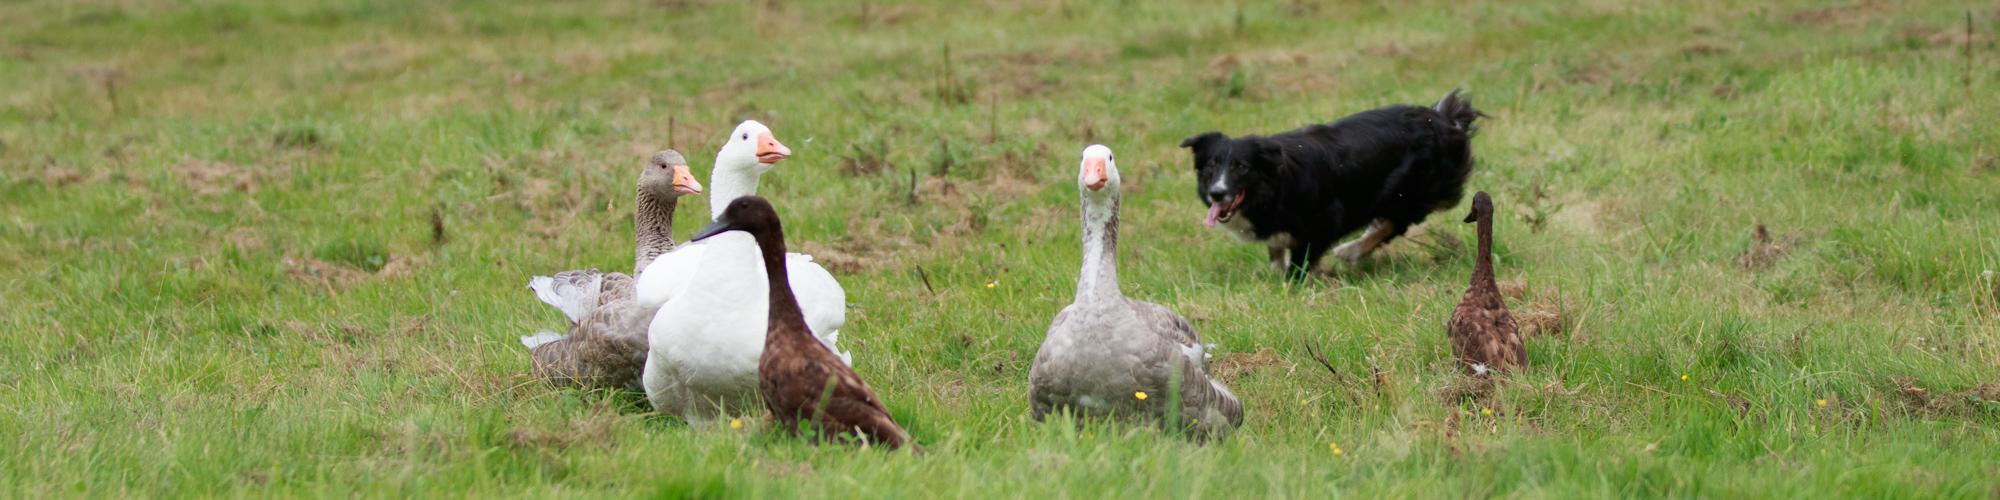 Reba herding ducks and geese